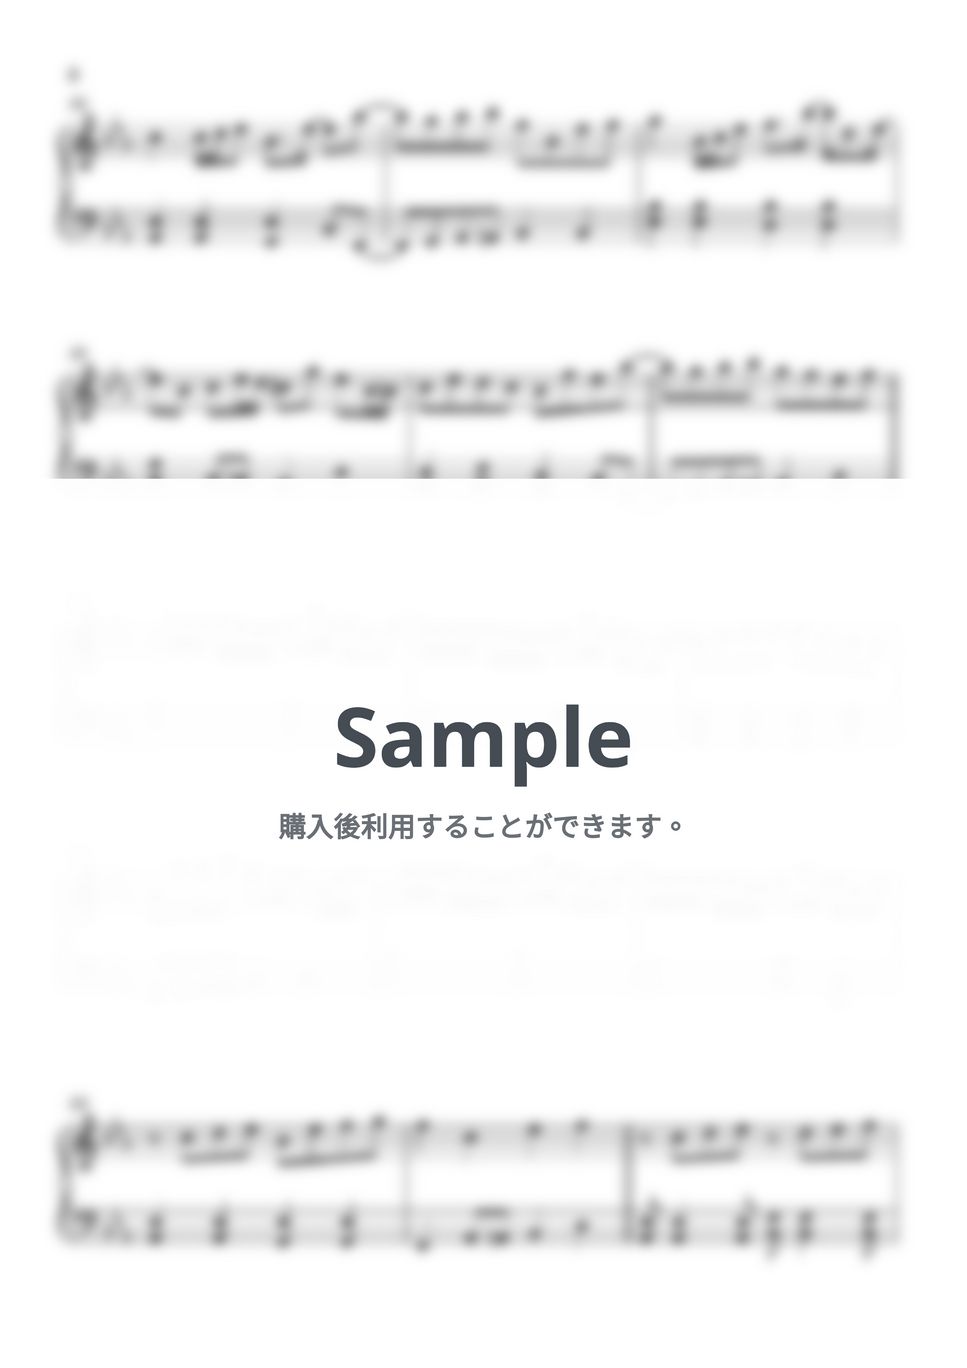 YOASOBI - もう少しだけ (ピアノ初心者向け) by Piano Lovers. jp